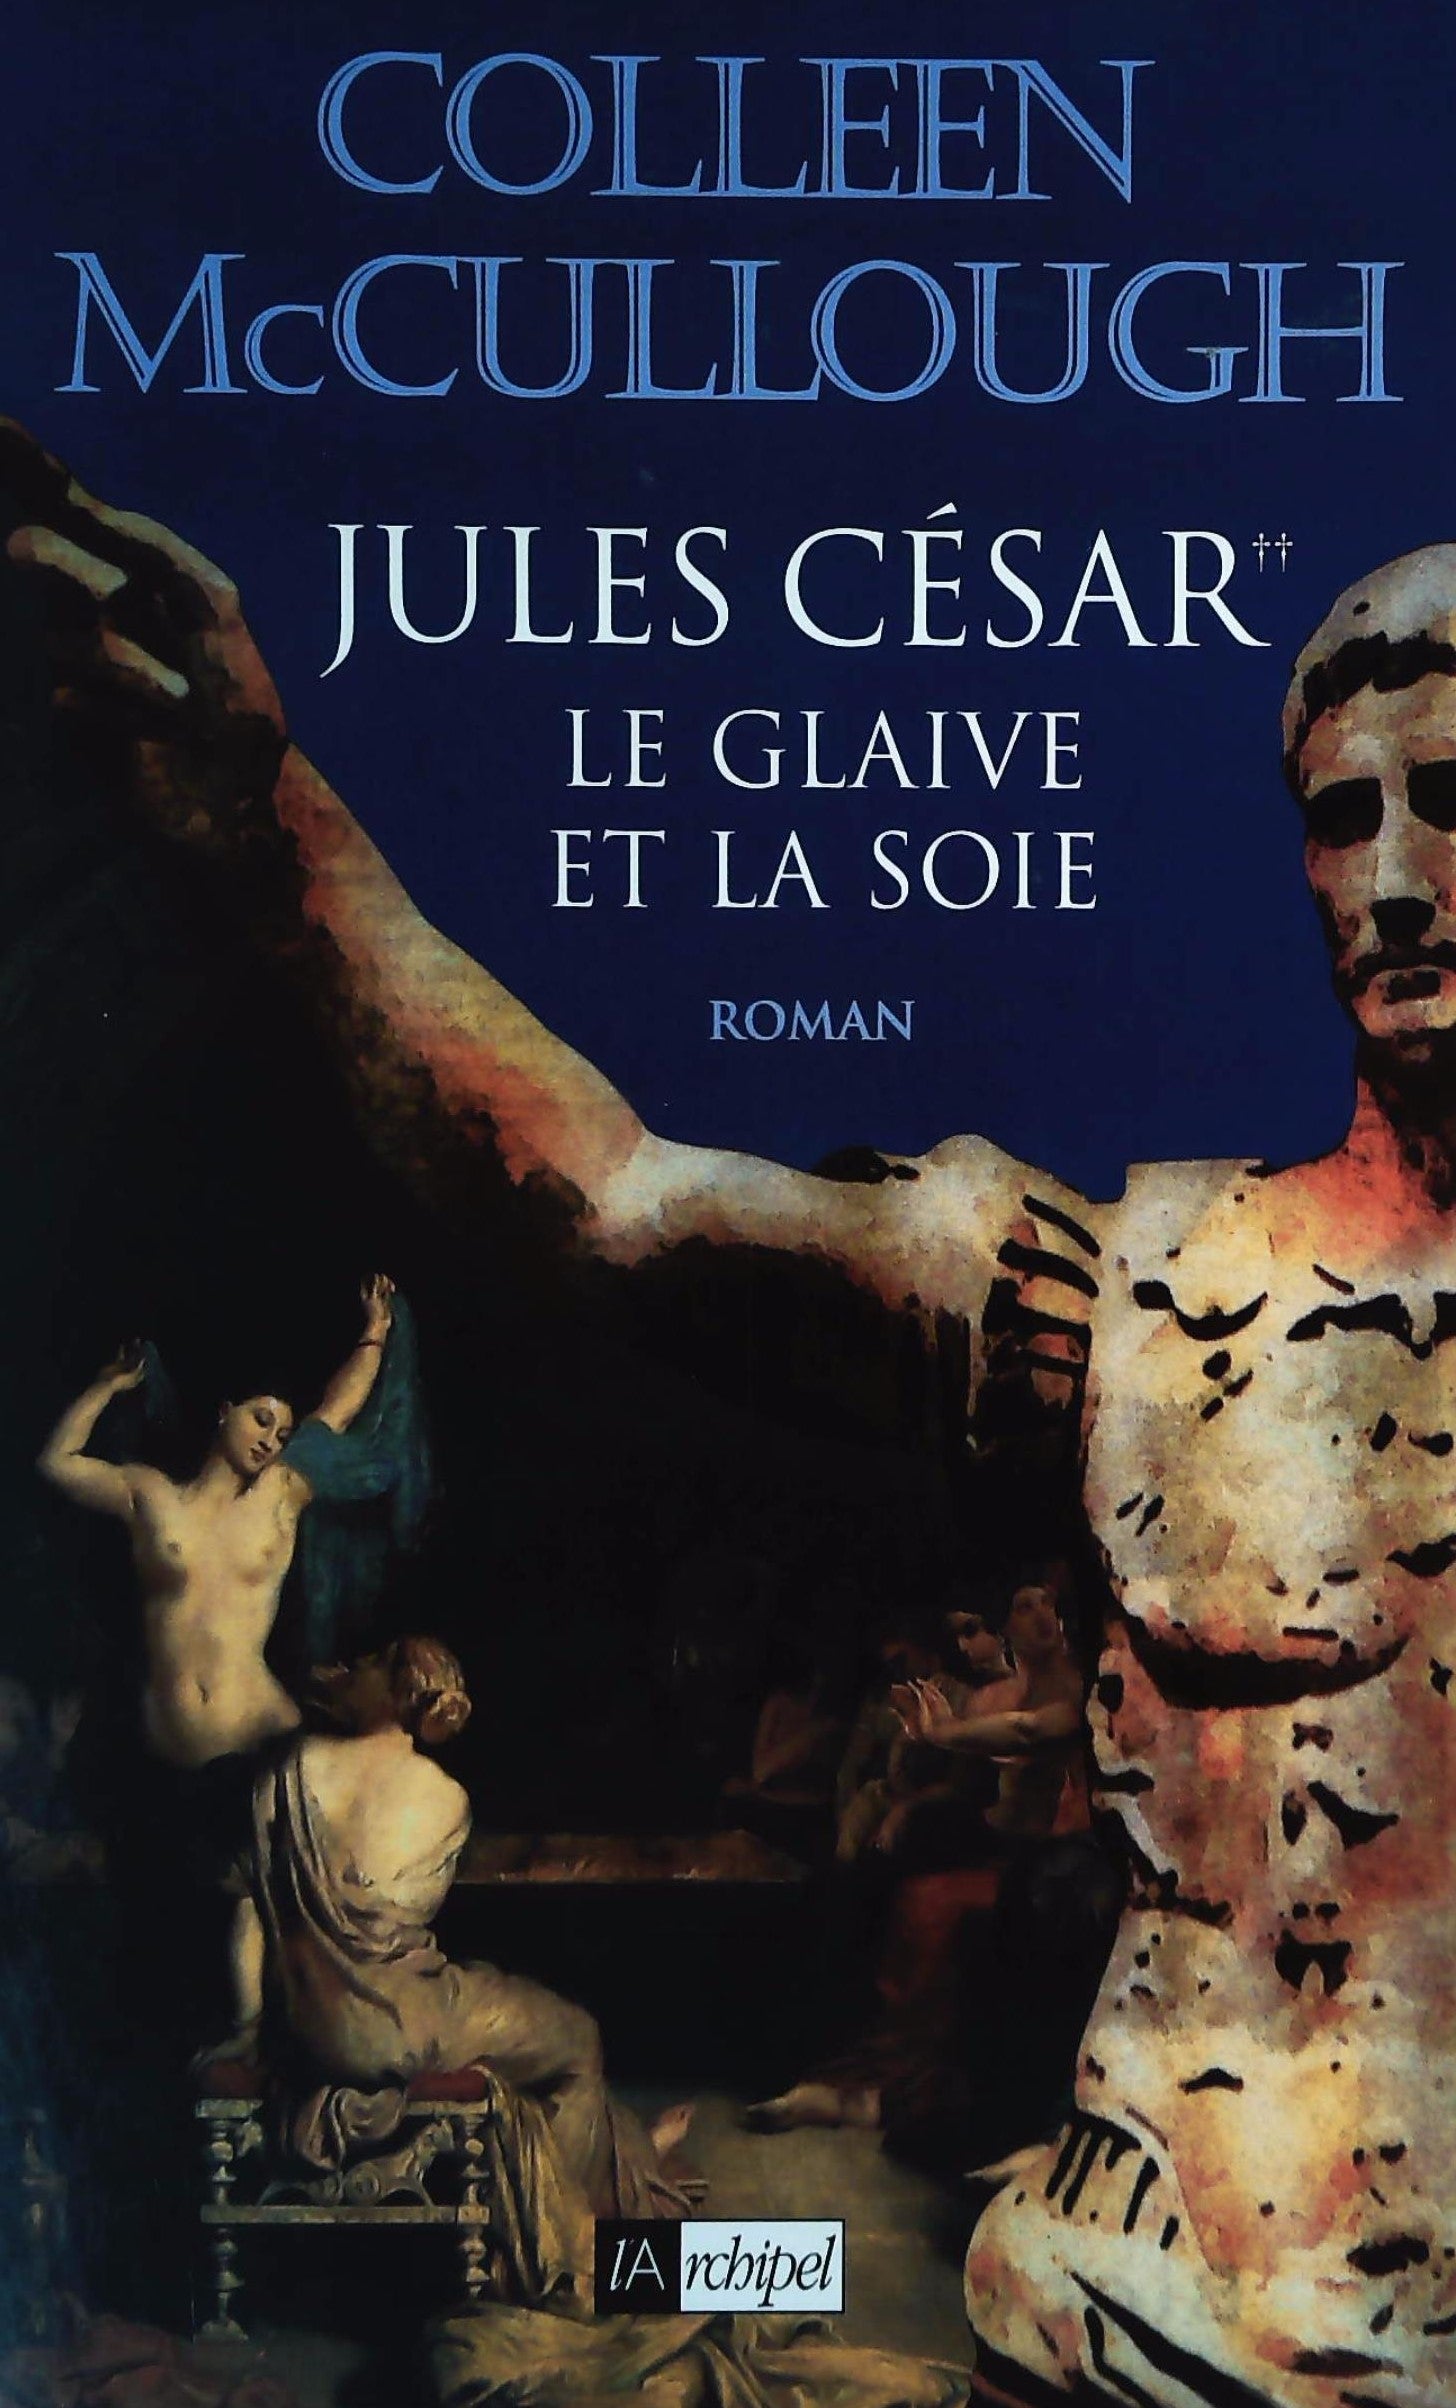 Livre ISBN 284187169X Jules César le glaive et la soie (Colleen McCullough)